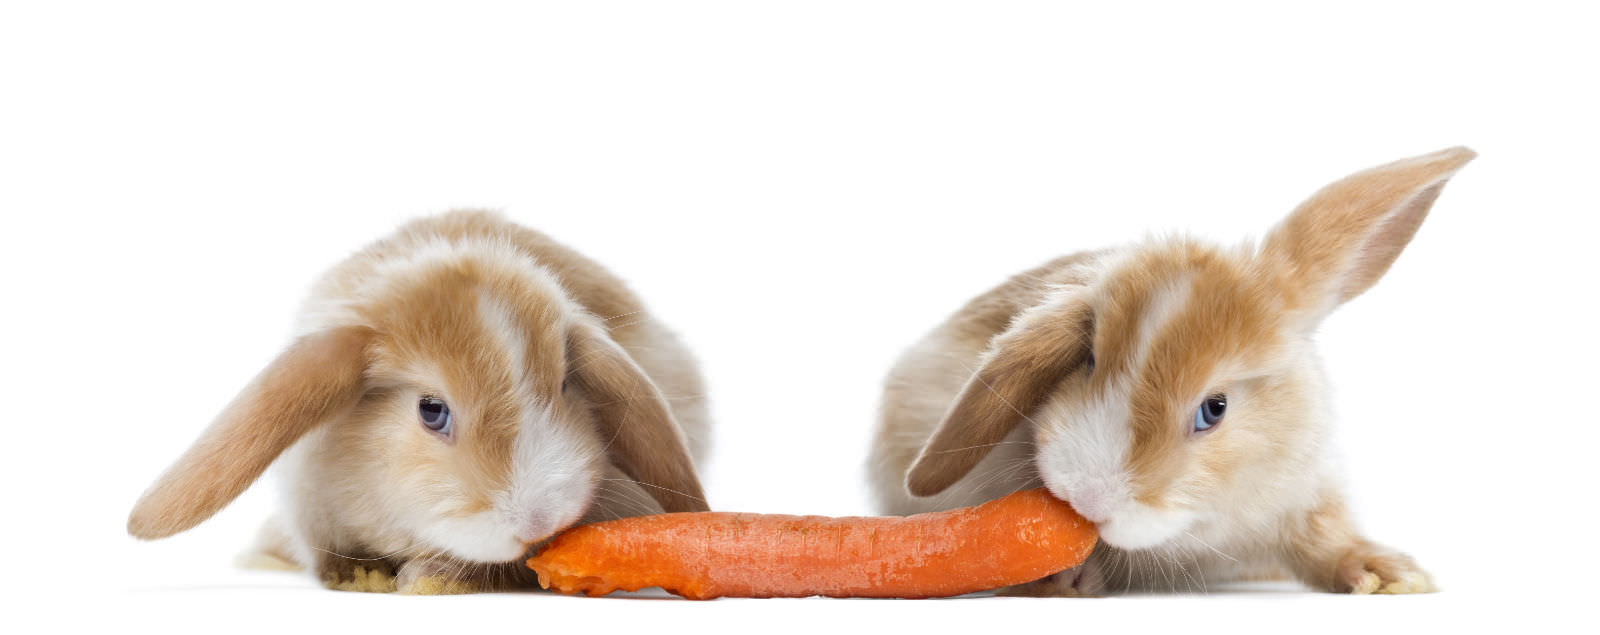 Conigli che mangiano le carote